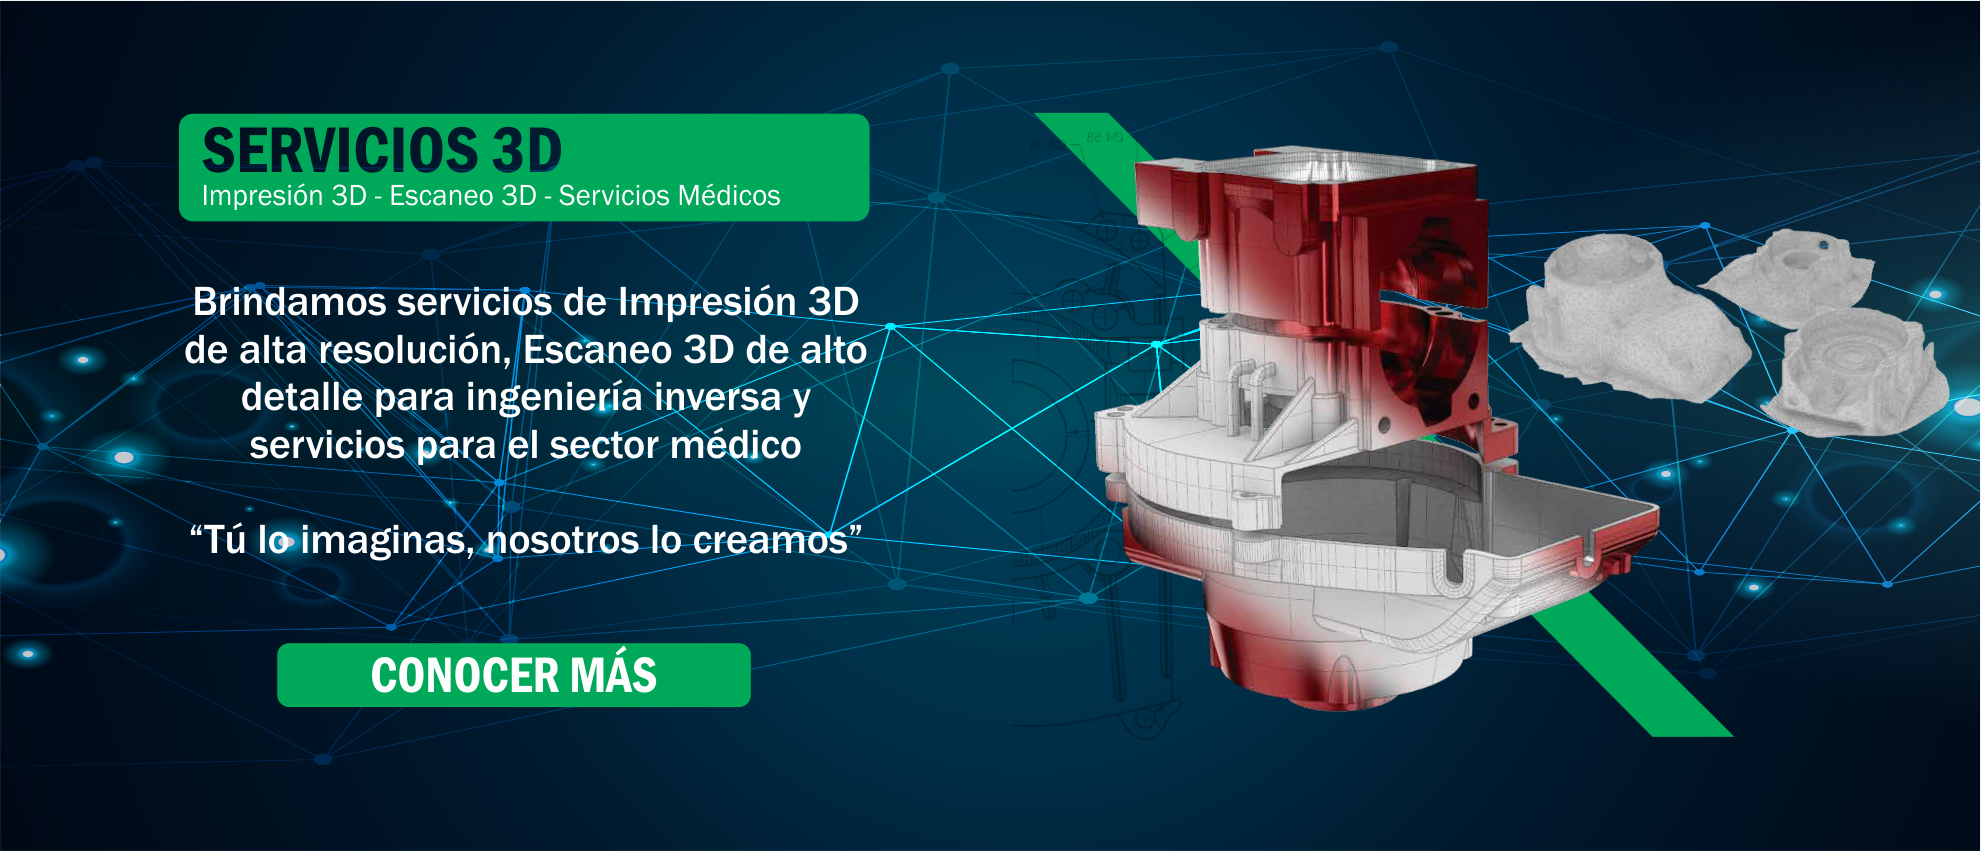 Día Vientre taiko triple Print3D Colombia - Impresoras 3D, Scanners 3D, Insumos y más a un click -  Print3d Colombia